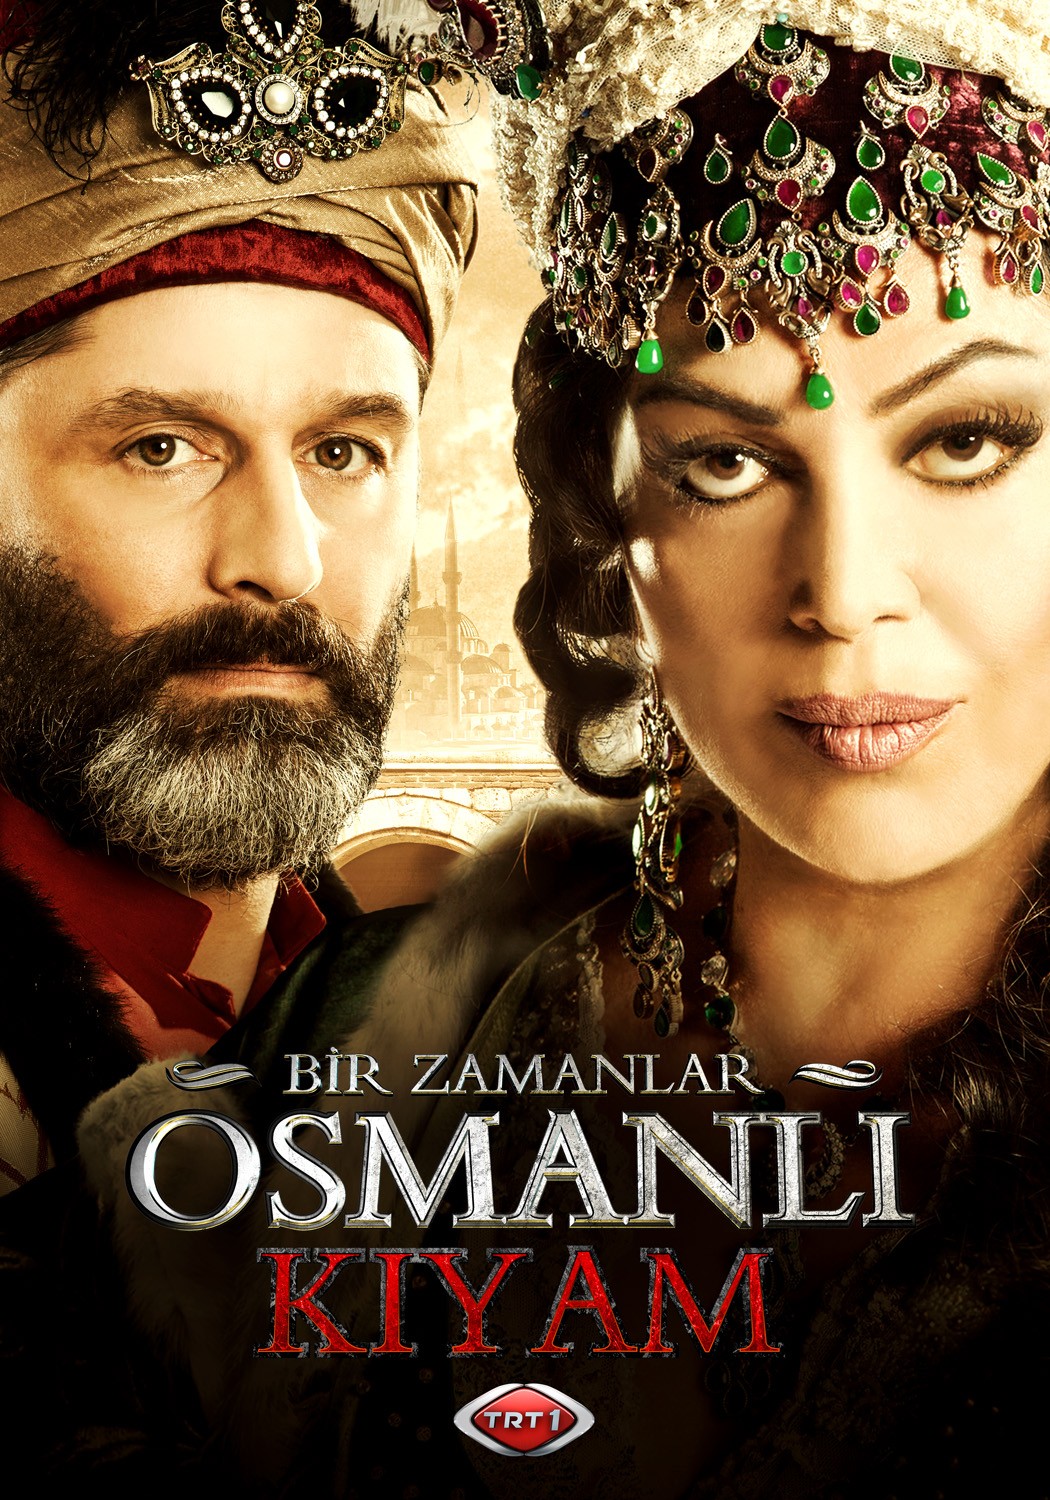 Extra Large TV Poster Image for Bir Zamanlar Osmanli Kiyam (#7 of 26)